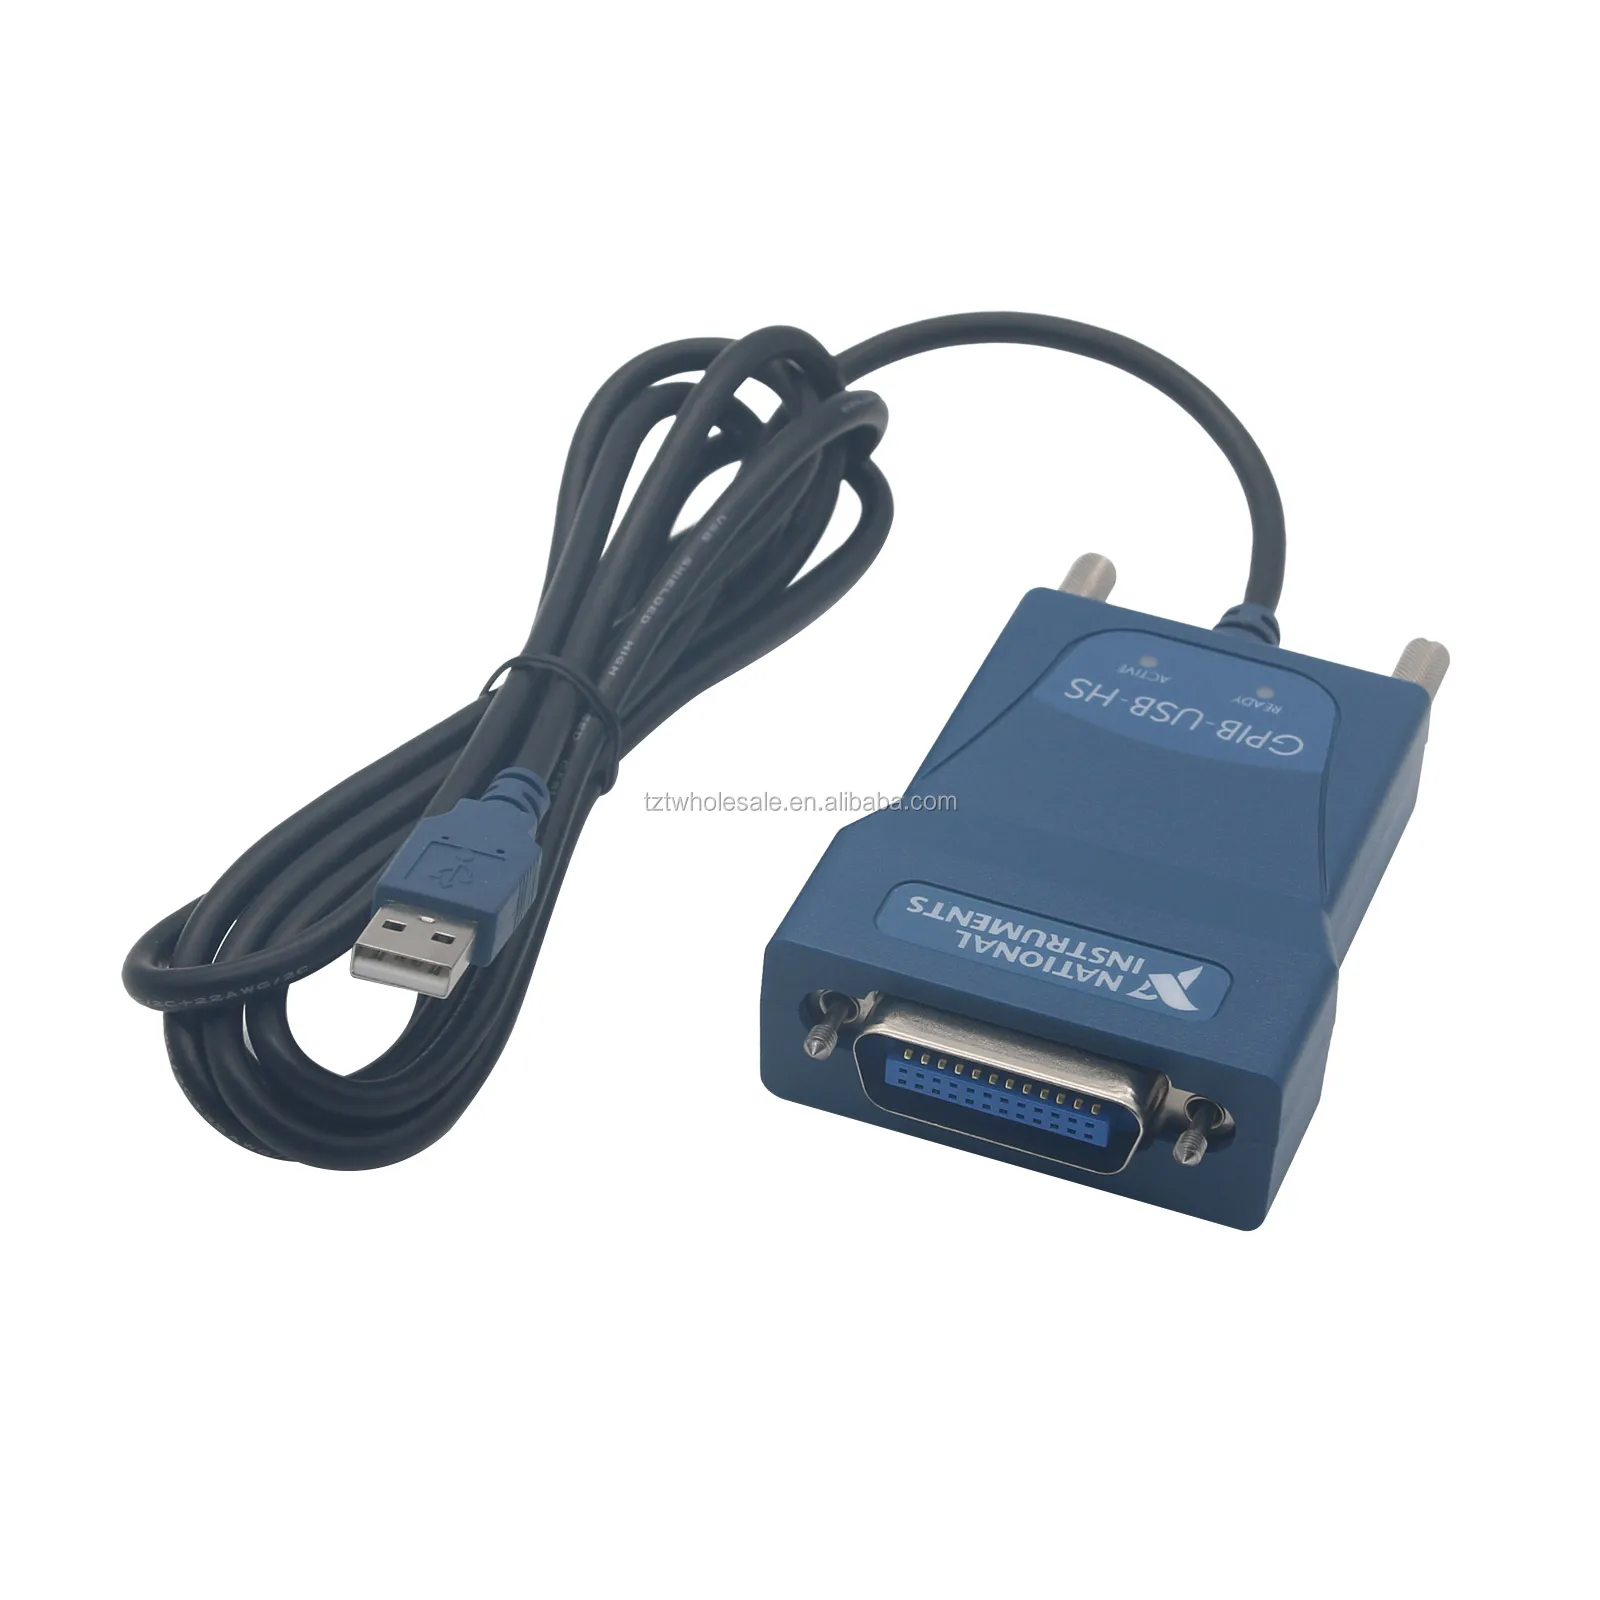 売り最安価格 NI USB-GPIBコントローラ GPIB-USB-HS PC周辺機器